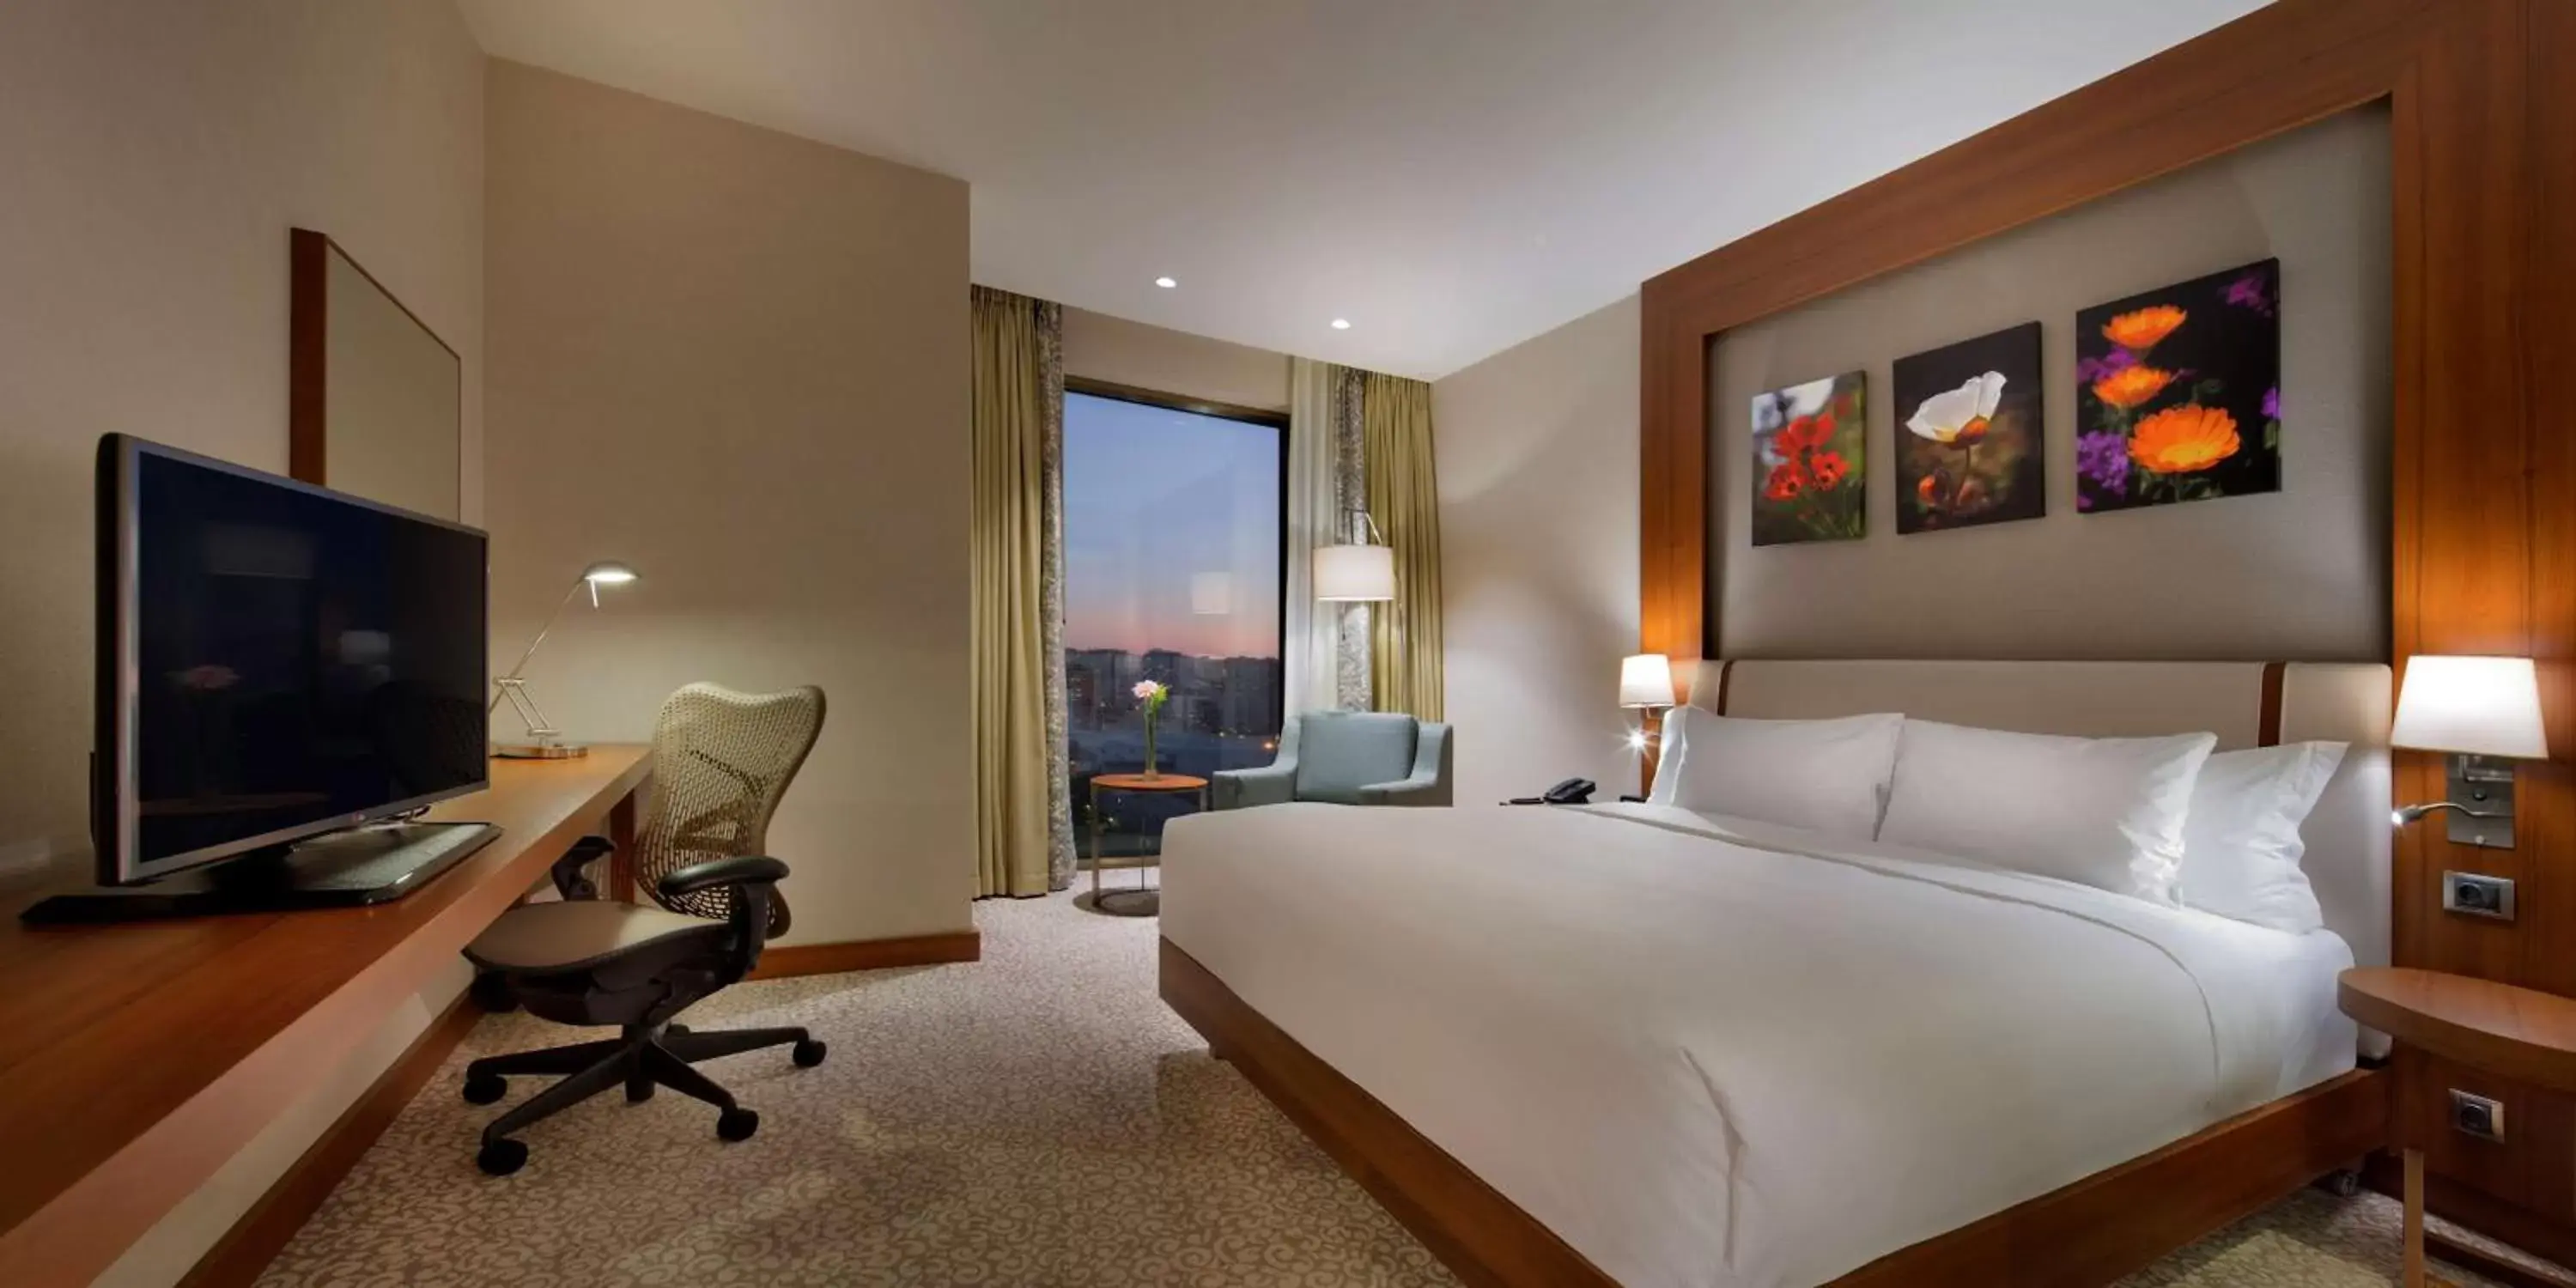 Bedroom in Hilton Garden Inn Istanbul Beylikduzu